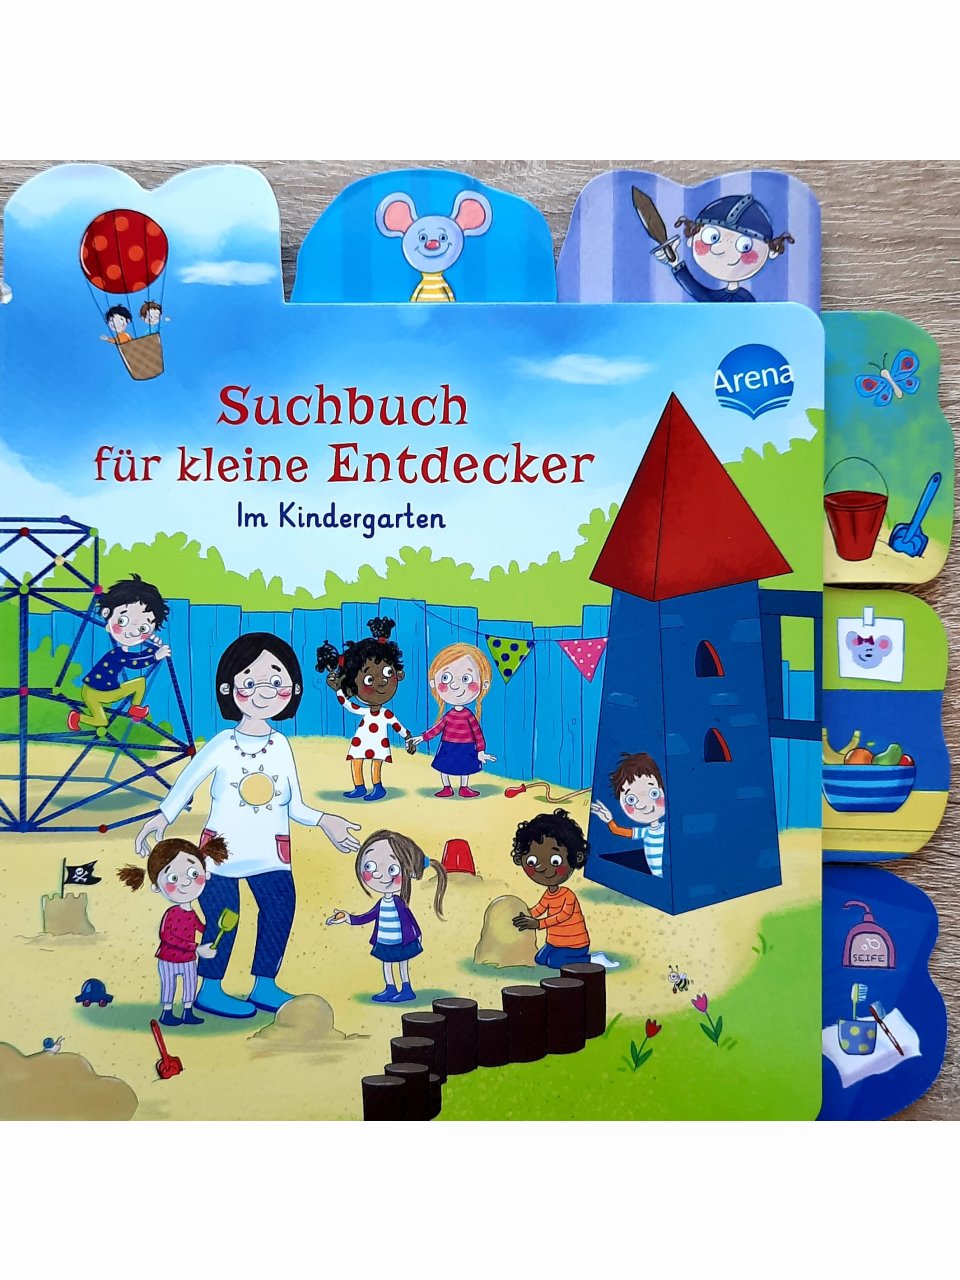 Suchbuch für kleine Entdecker - im Kindergarten